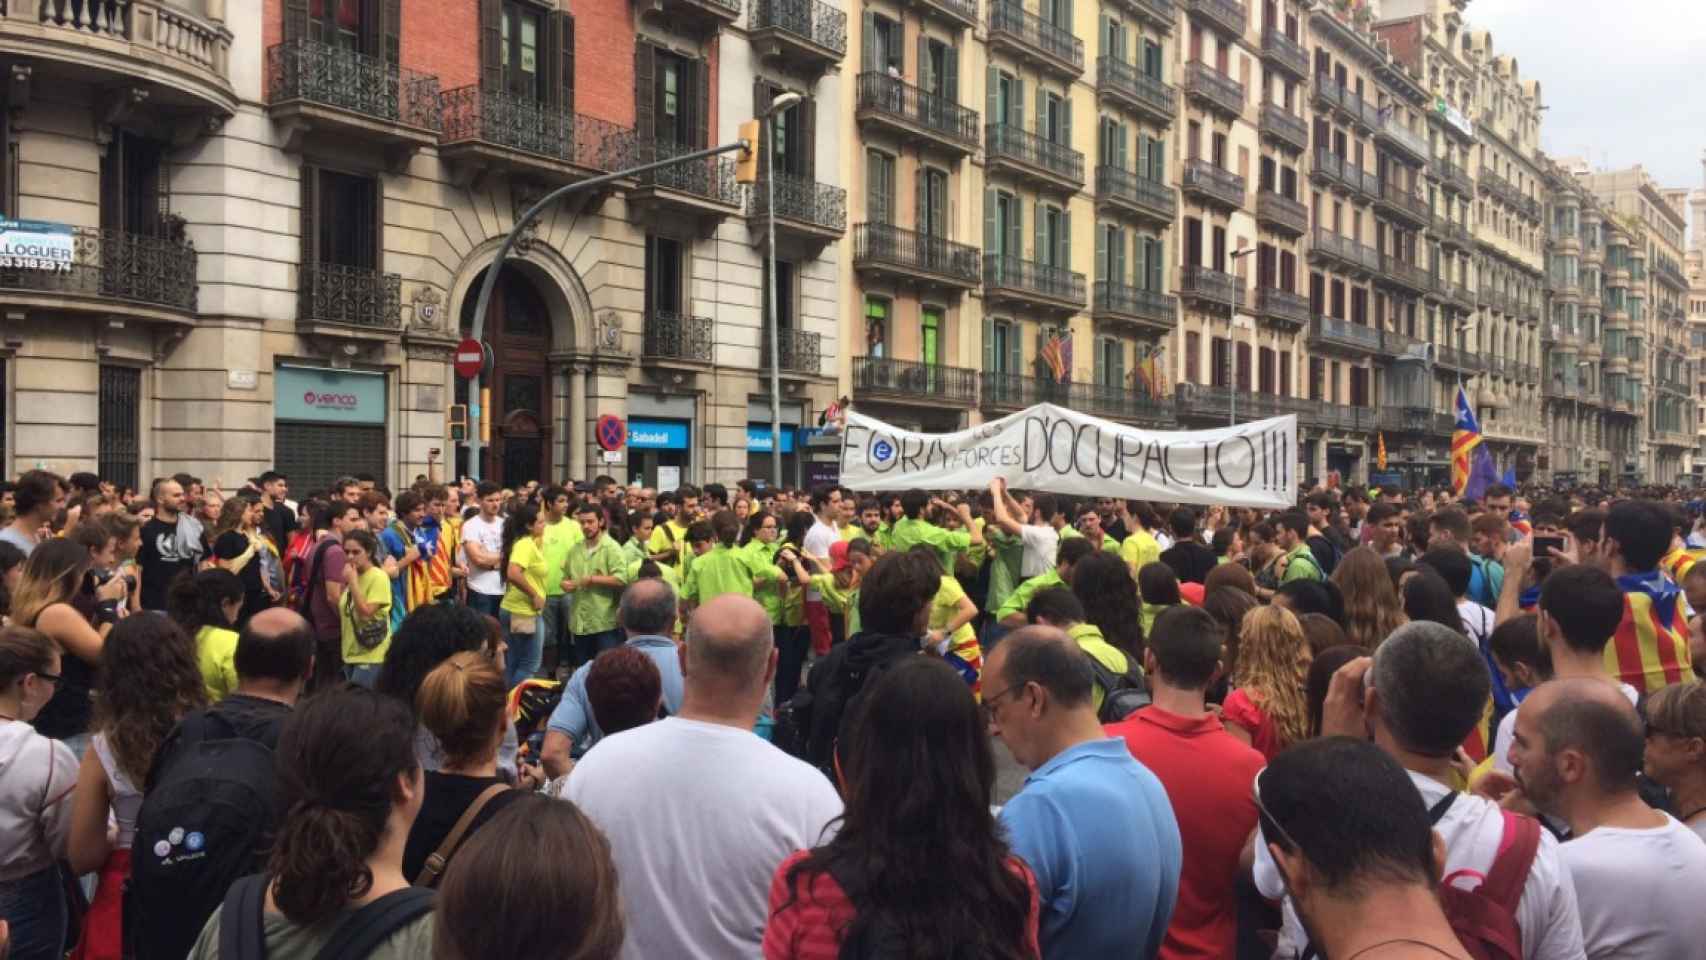 Fuera las fuerzas de ocupación, reza una pancarta en Barcelona.